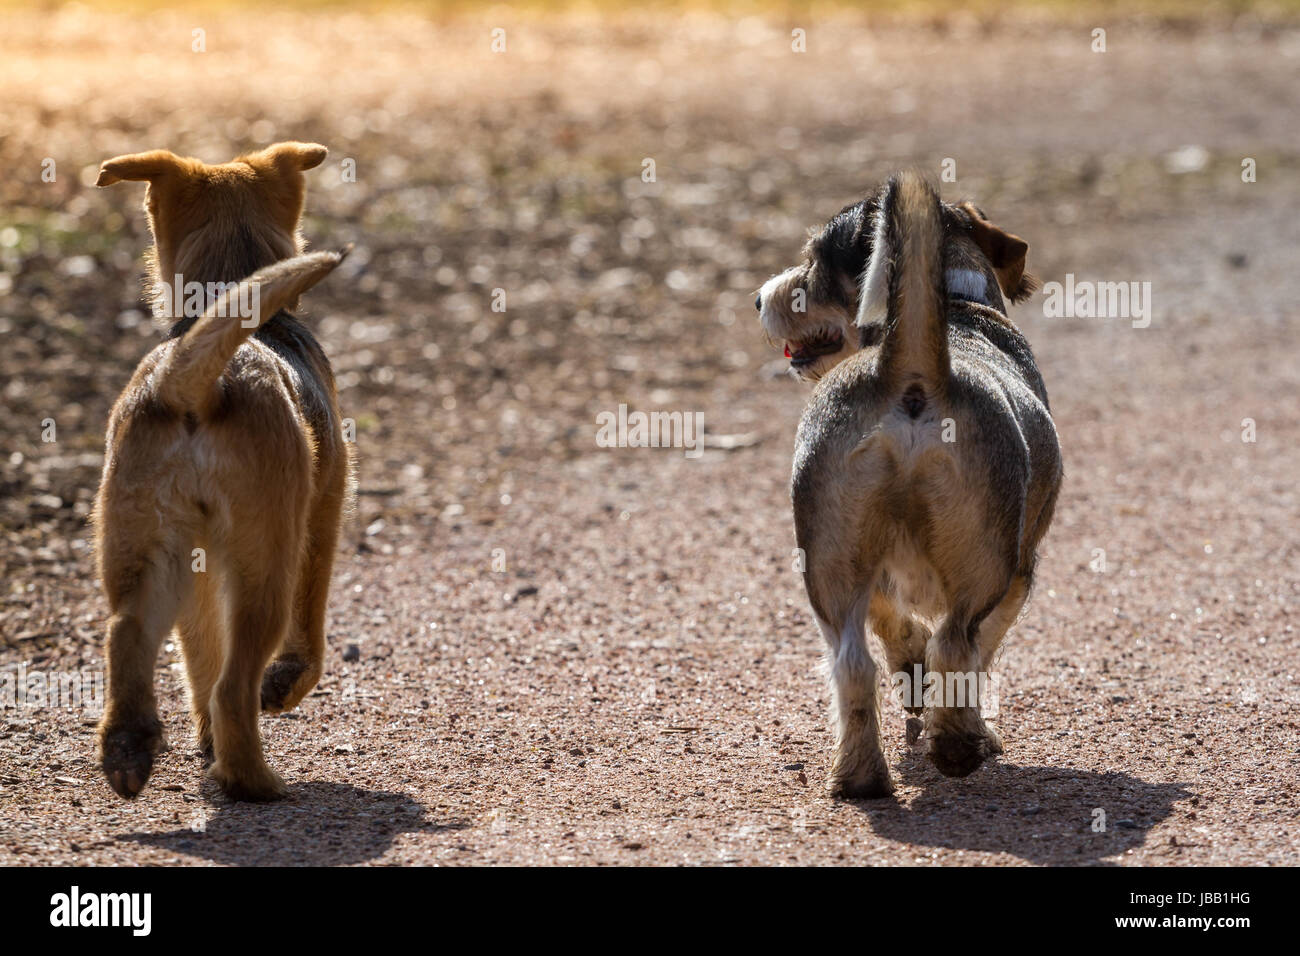 Zwei Hund laufen gemeinsam mit stehender Rute aufmerksam entlang Der Weg,  die Hunde bewegen sich vom Eisenwaren weg Photo Stock - Alamy